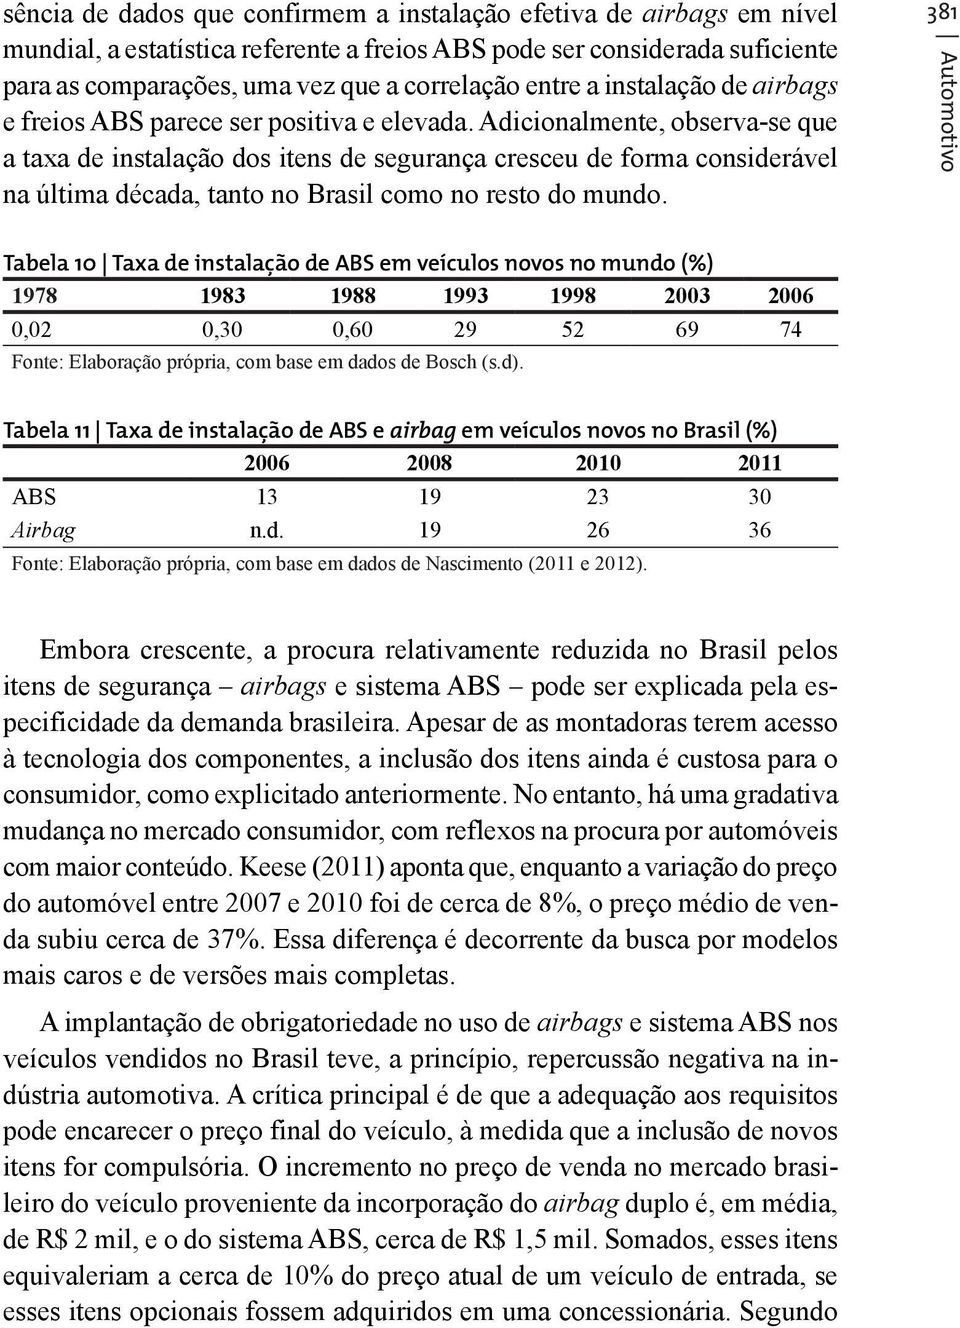 Adicionalmente, observa-se que a taxa de instalação dos itens de segurança cresceu de forma considerável na última década, tanto no Brasil como no resto do mundo.